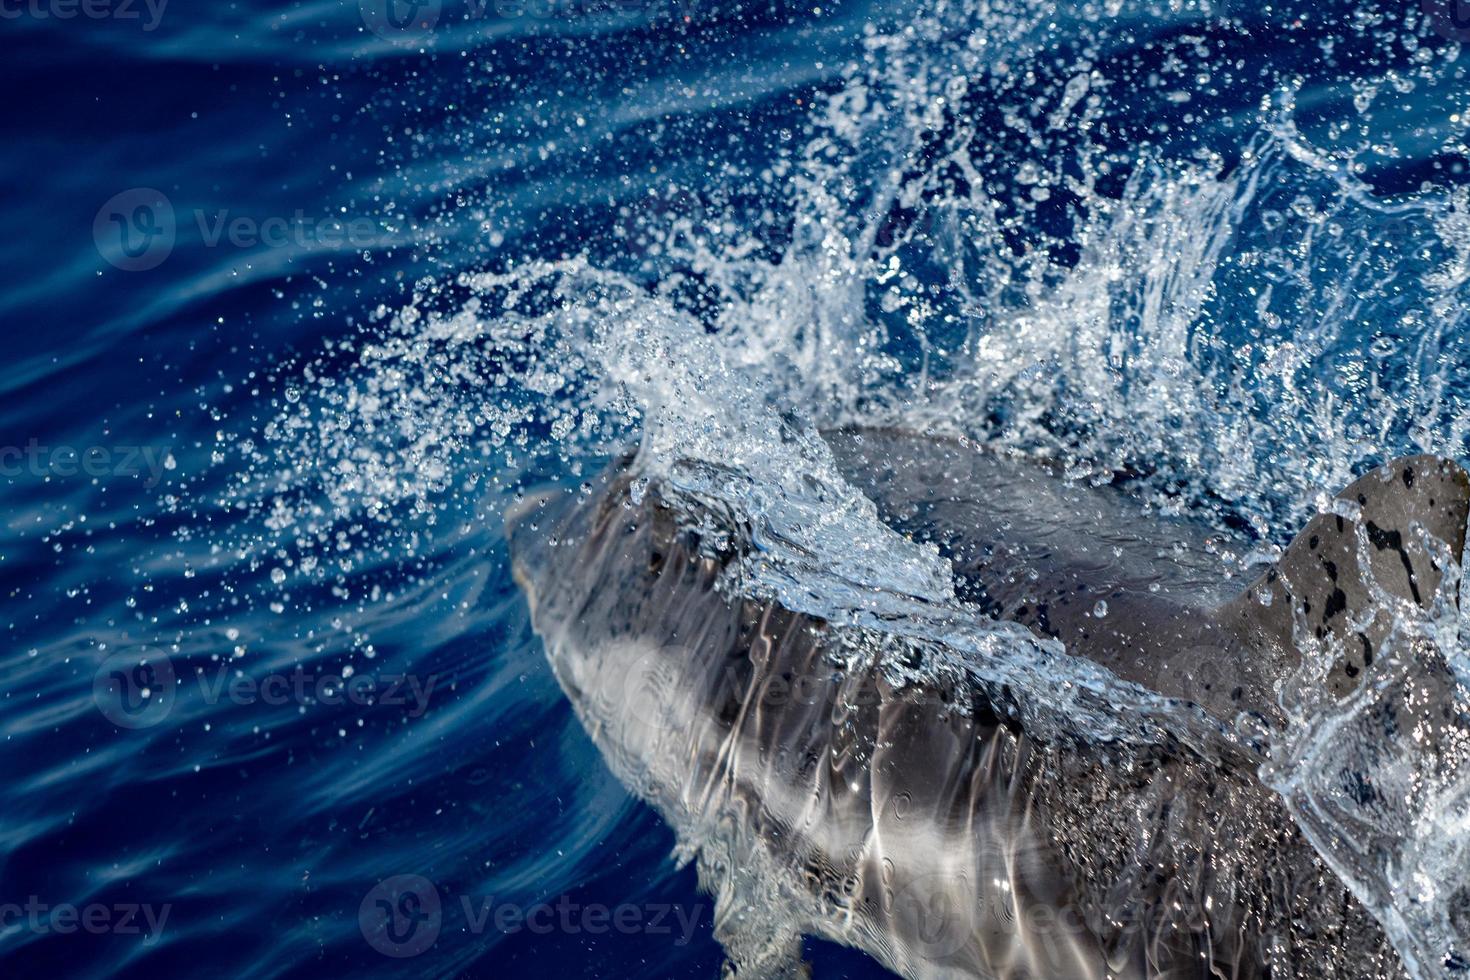 delfin medan Hoppar i de djup blå hav foto